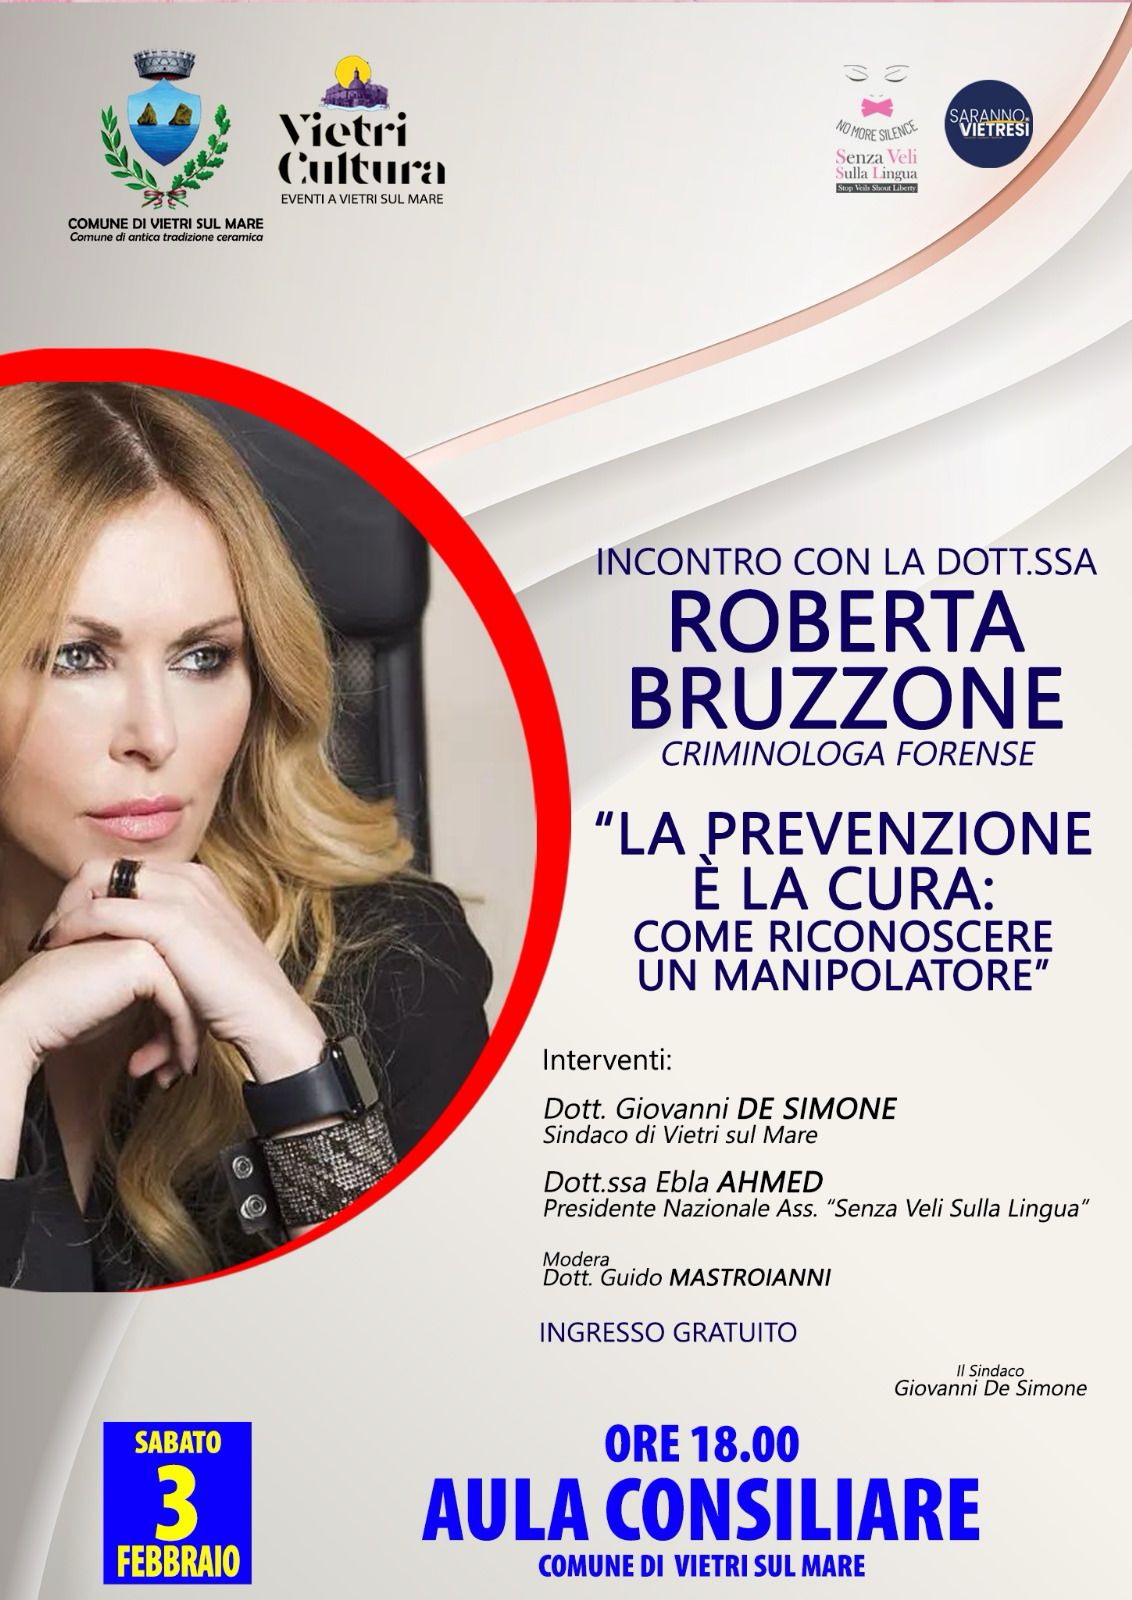 Vietri sul Mare: incontro “La prevenzione è la cura: come riconoscere un manipolatore” incontro con criminologa forense Roberta Bruzzone   